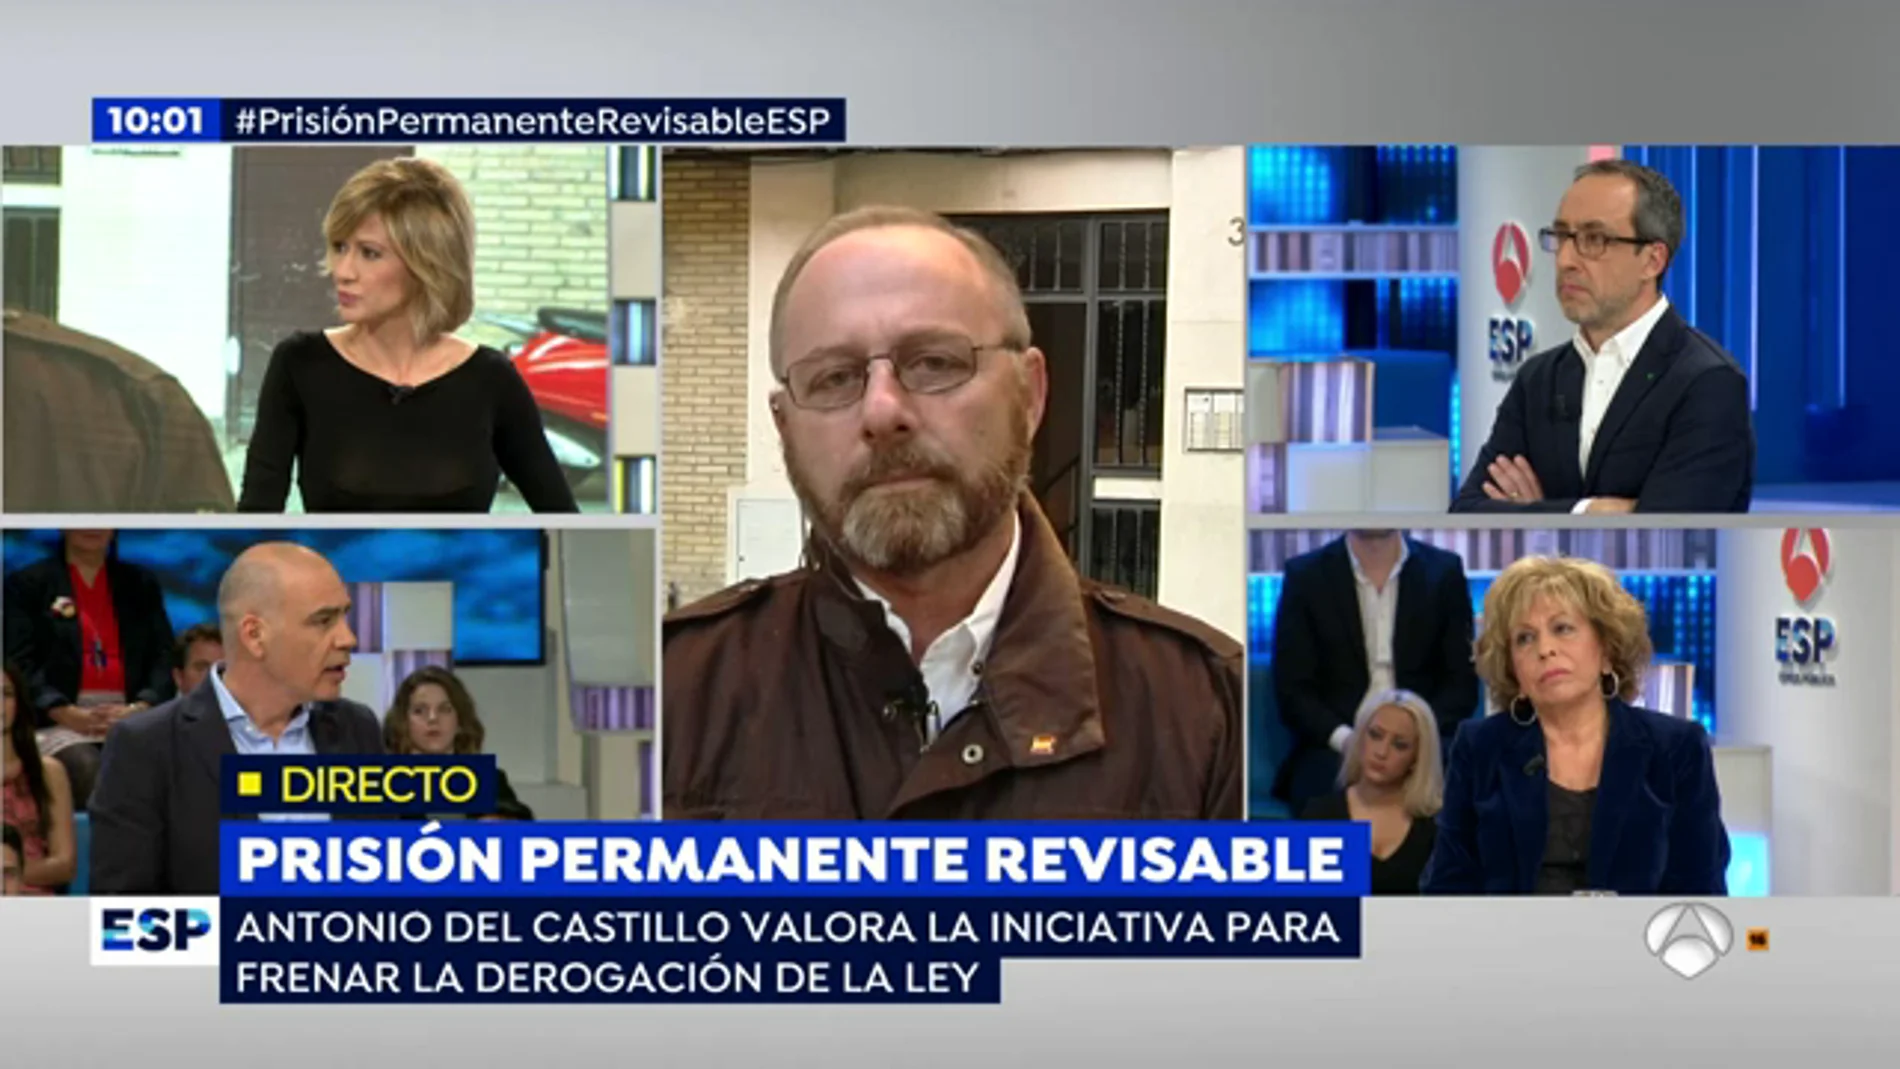 El padre de Marta del Castillo, sobre la prisión permanente revisable: "Es una manera de previsión para la sociedad, estamos pidiendo justicia"